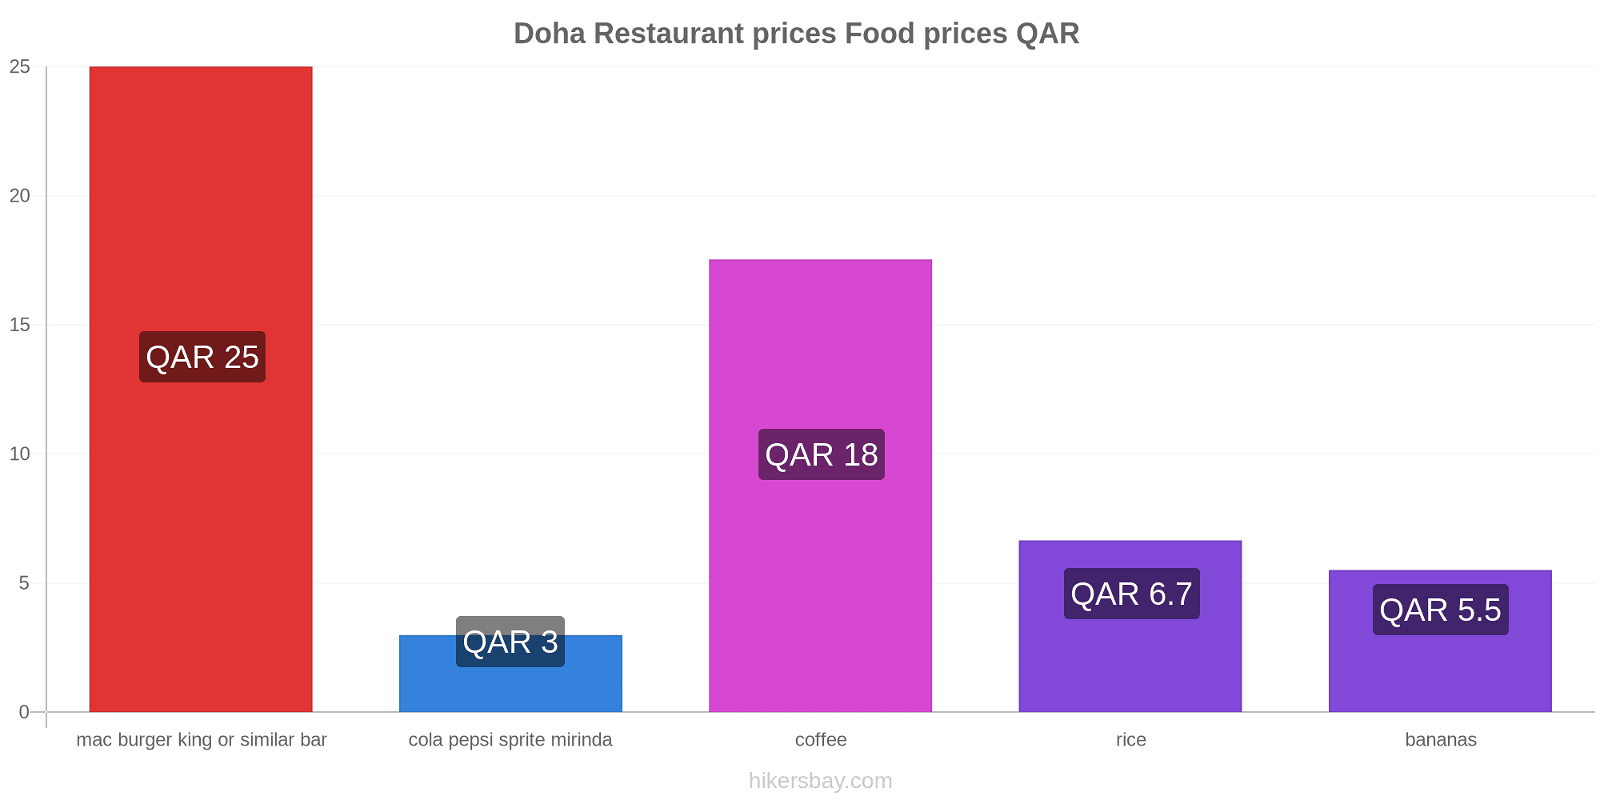 Doha price changes hikersbay.com